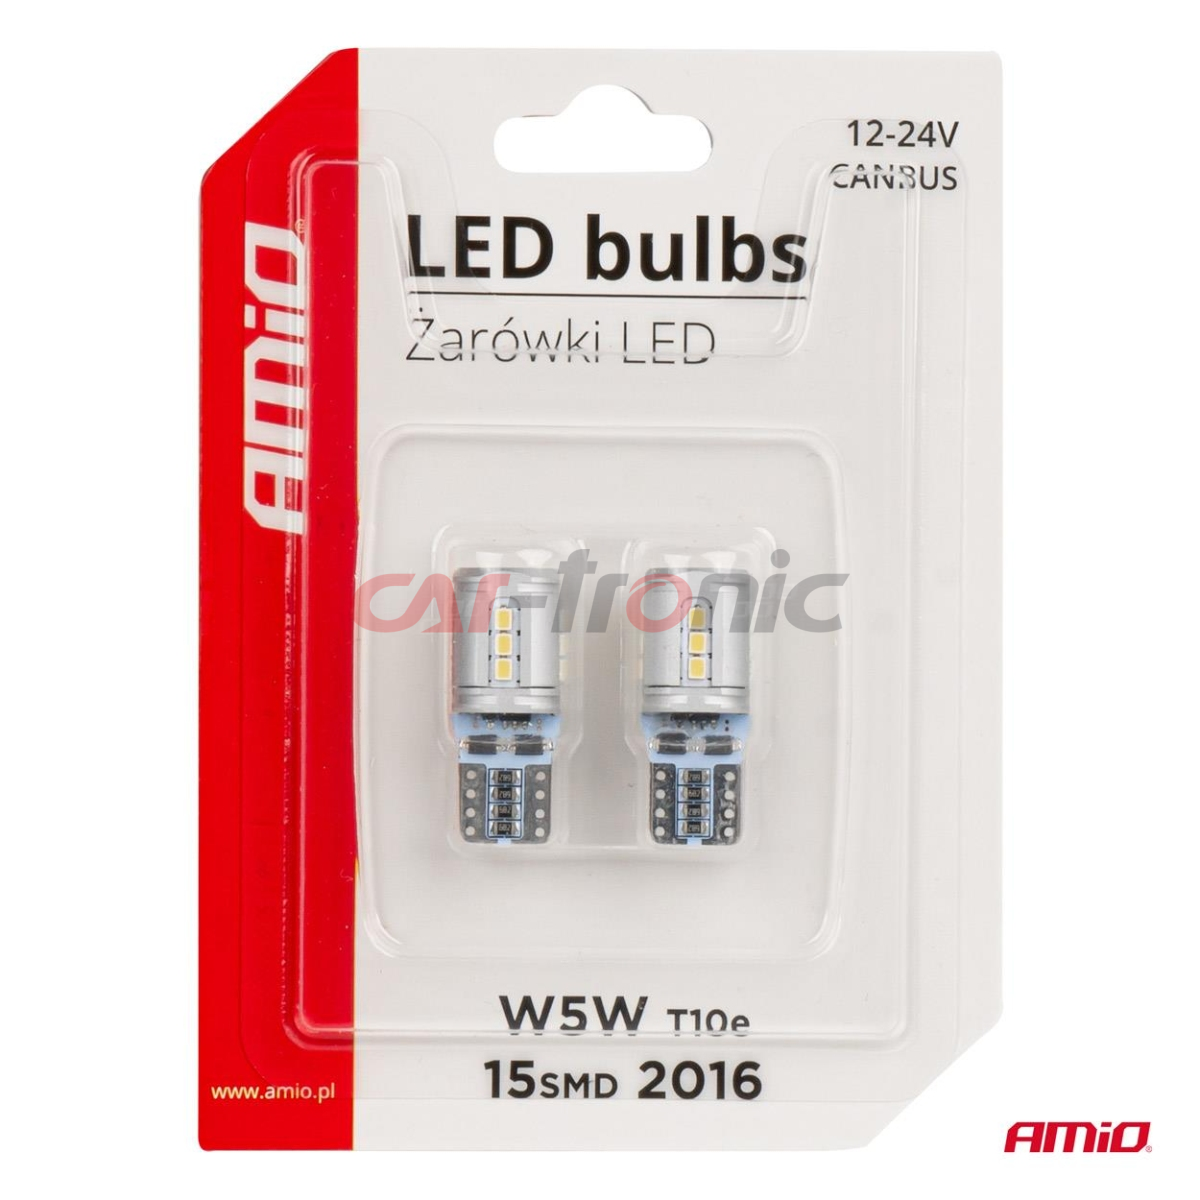 Żarówki LED CANBUS T10e W5W 15x2016 SMD White 12V 24V AMIO-03723